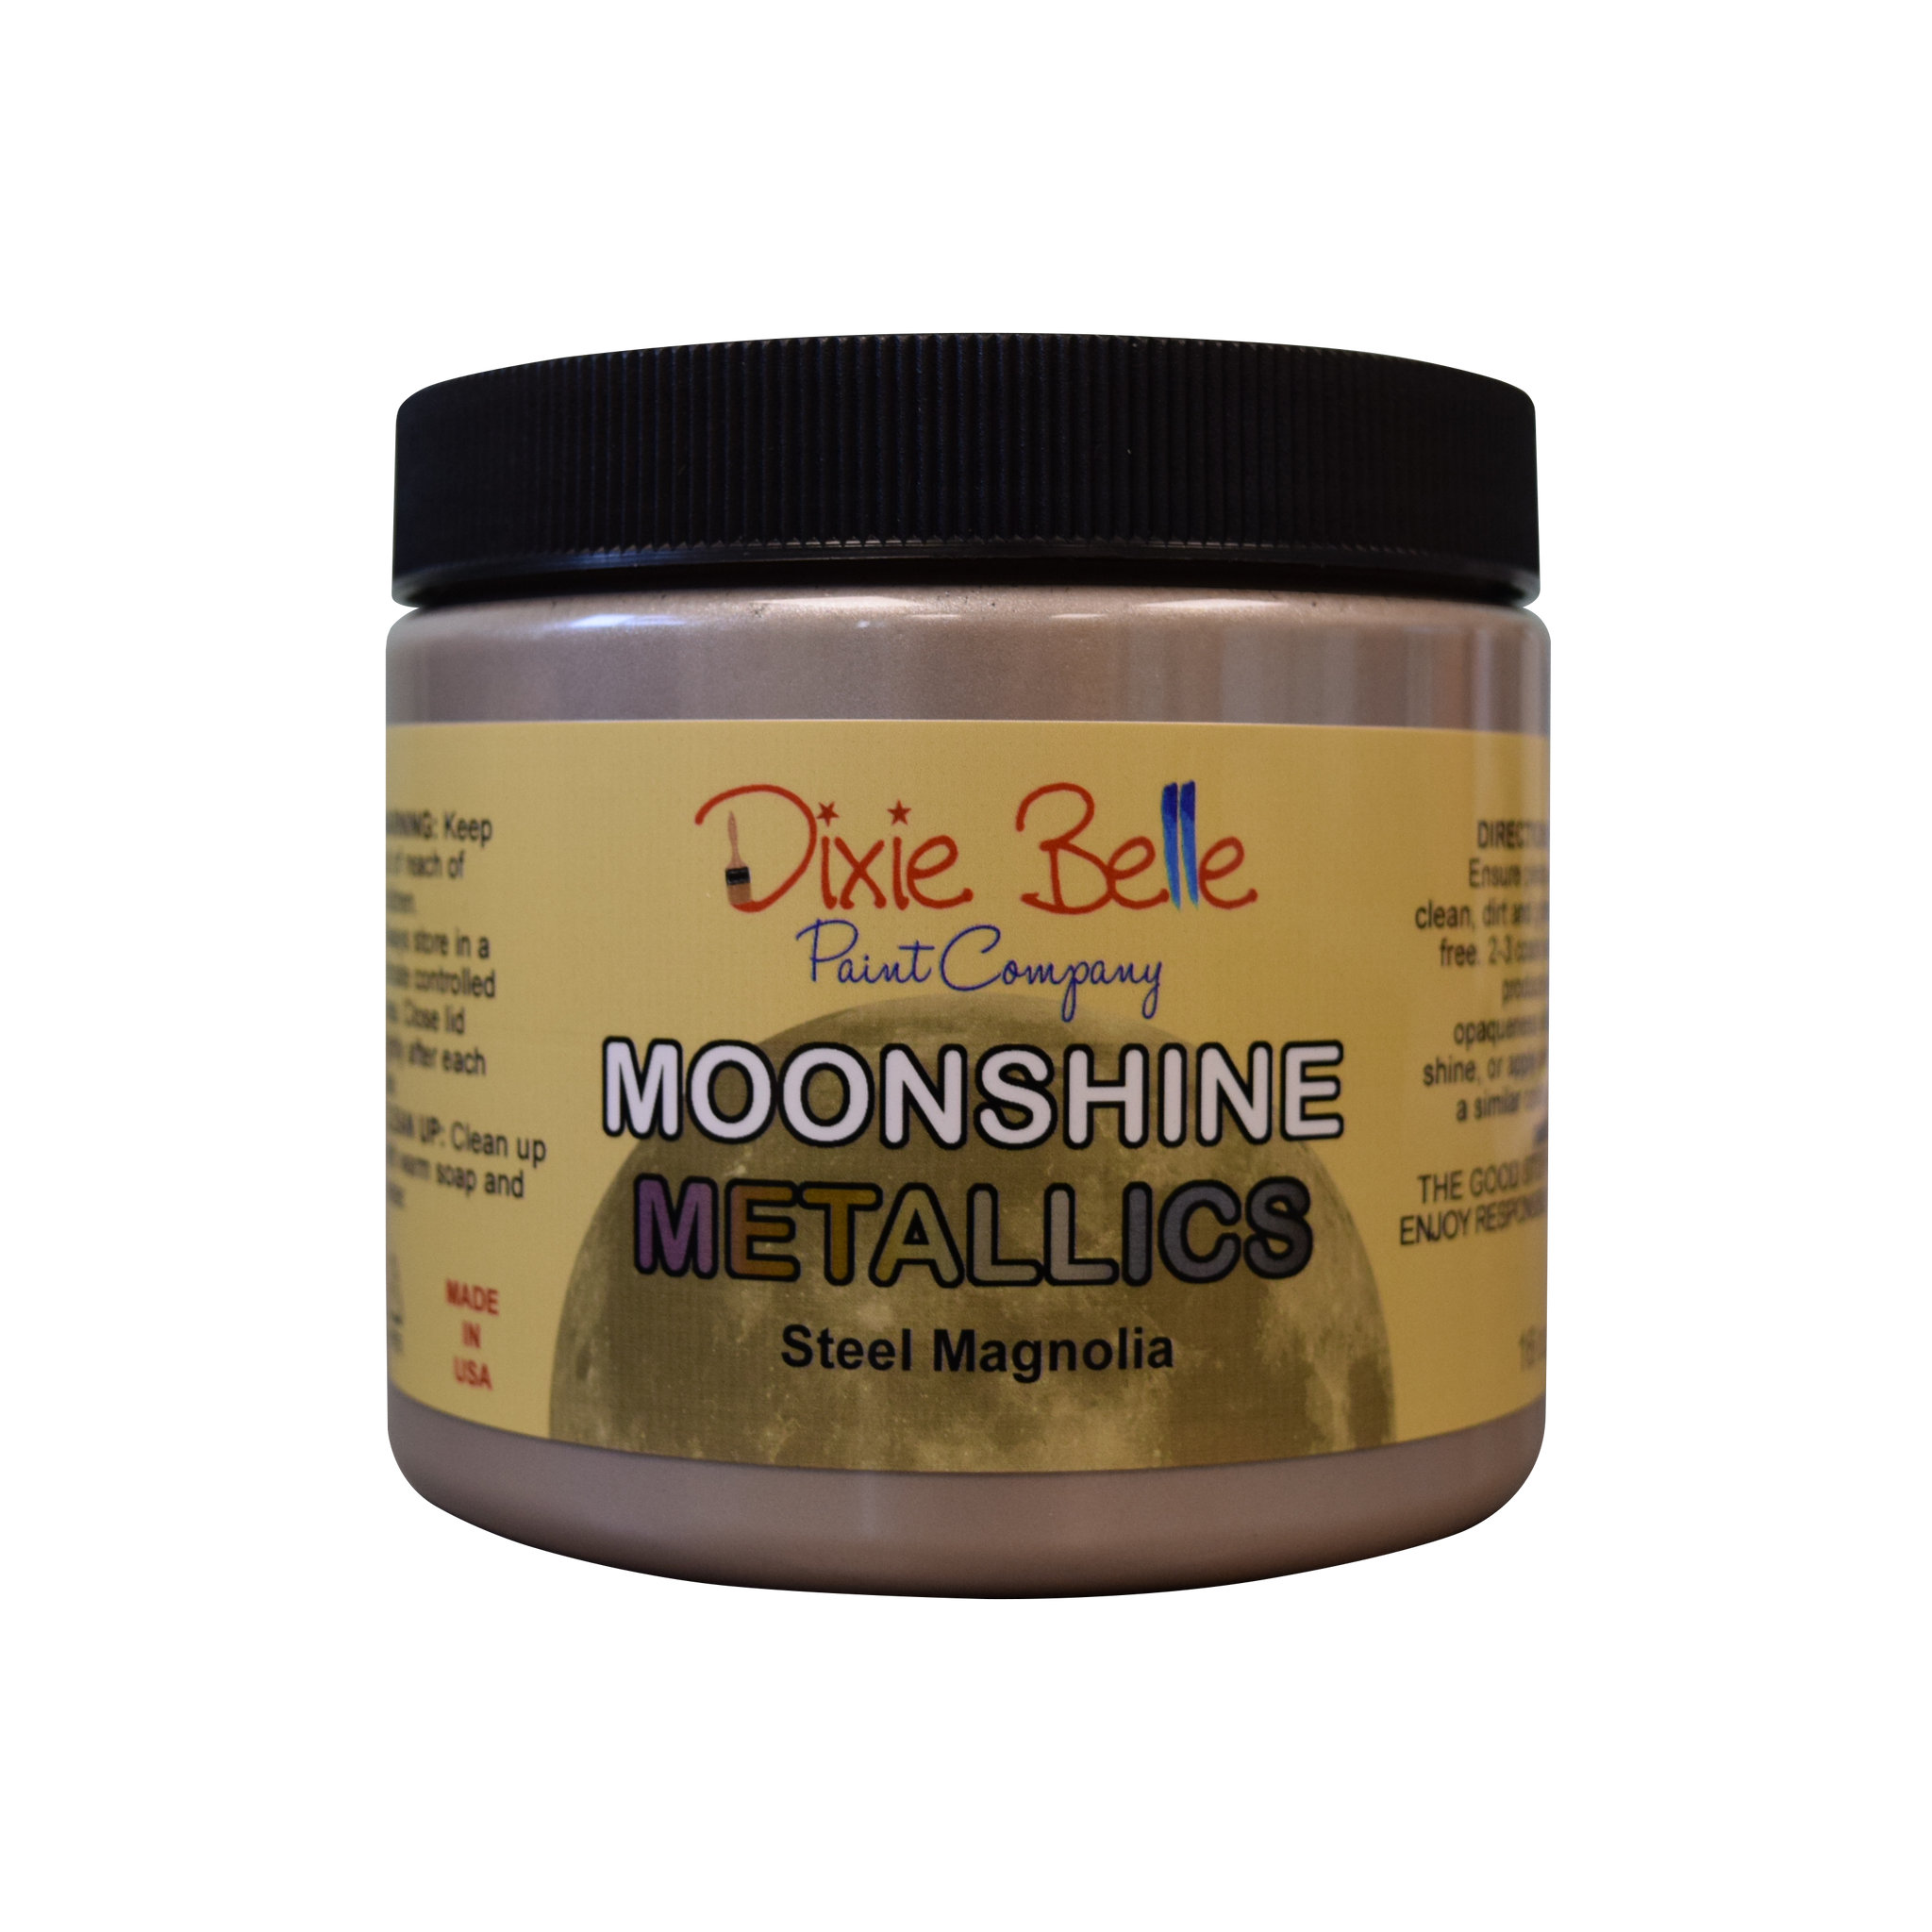 Moonshine Metallic Steel Magnolia 16oz (473ml)